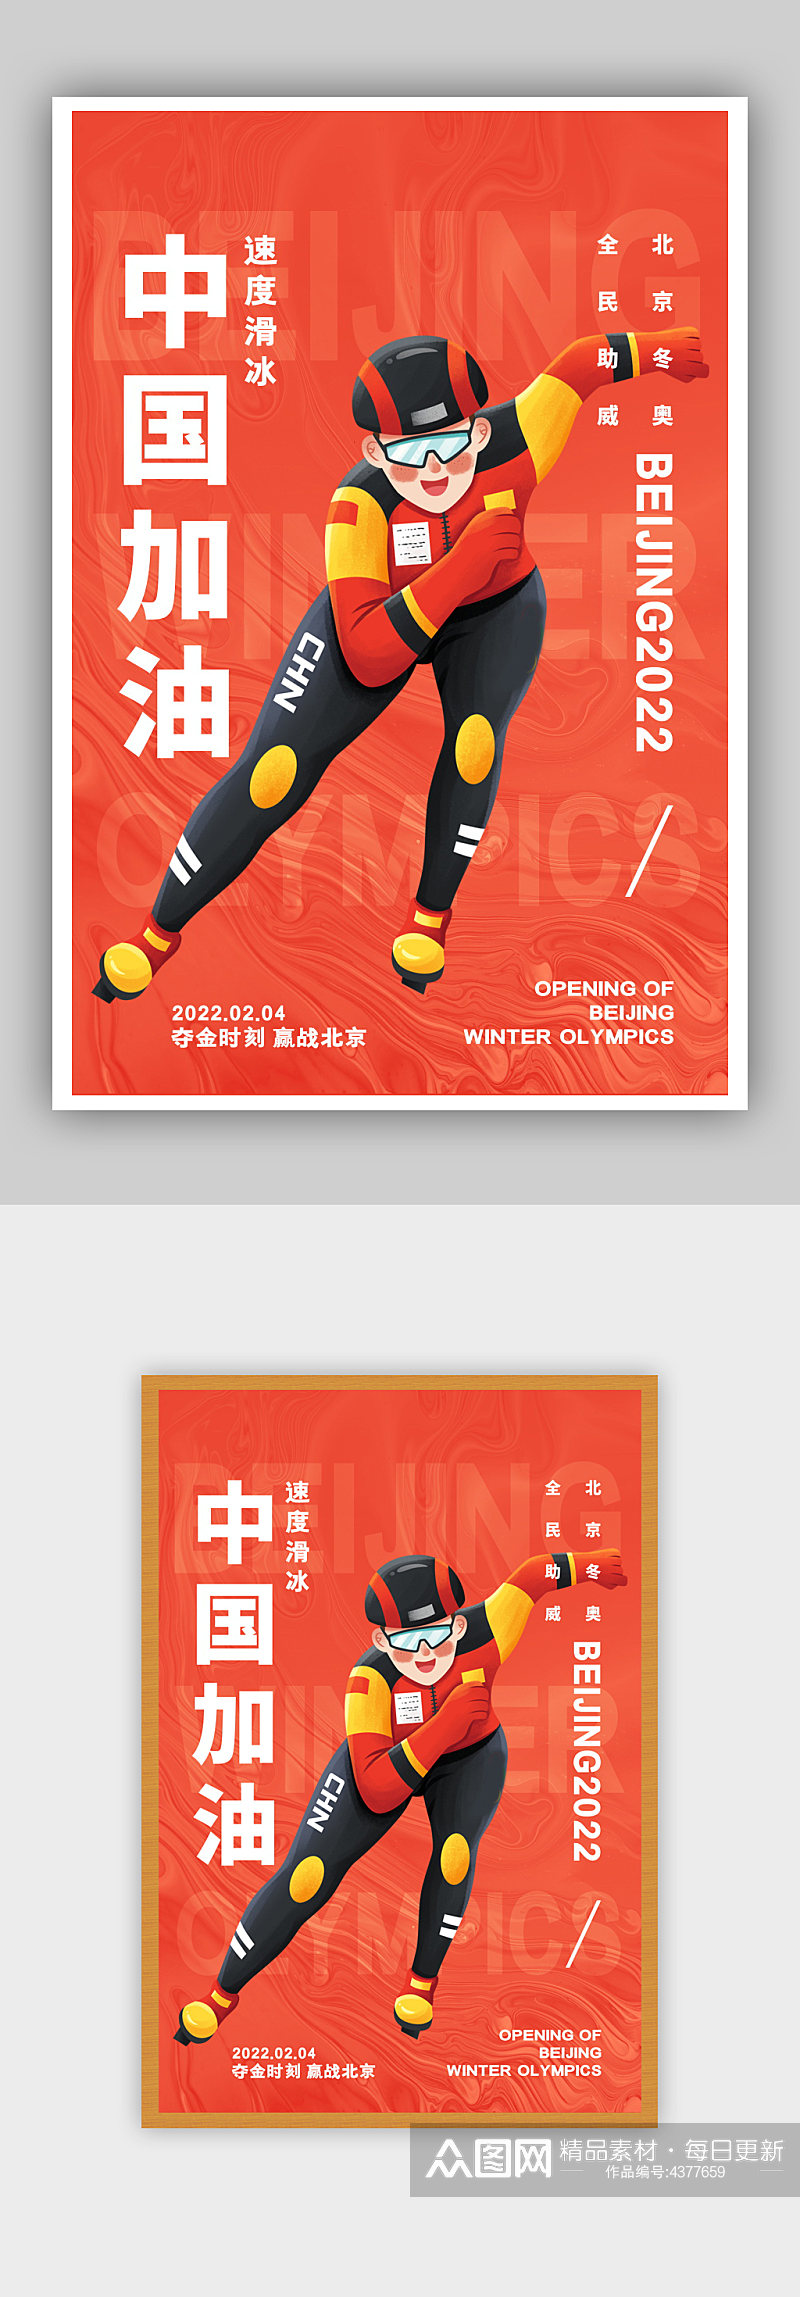 简约红色中国加油北京冬奥会滑冰宣传海报素材